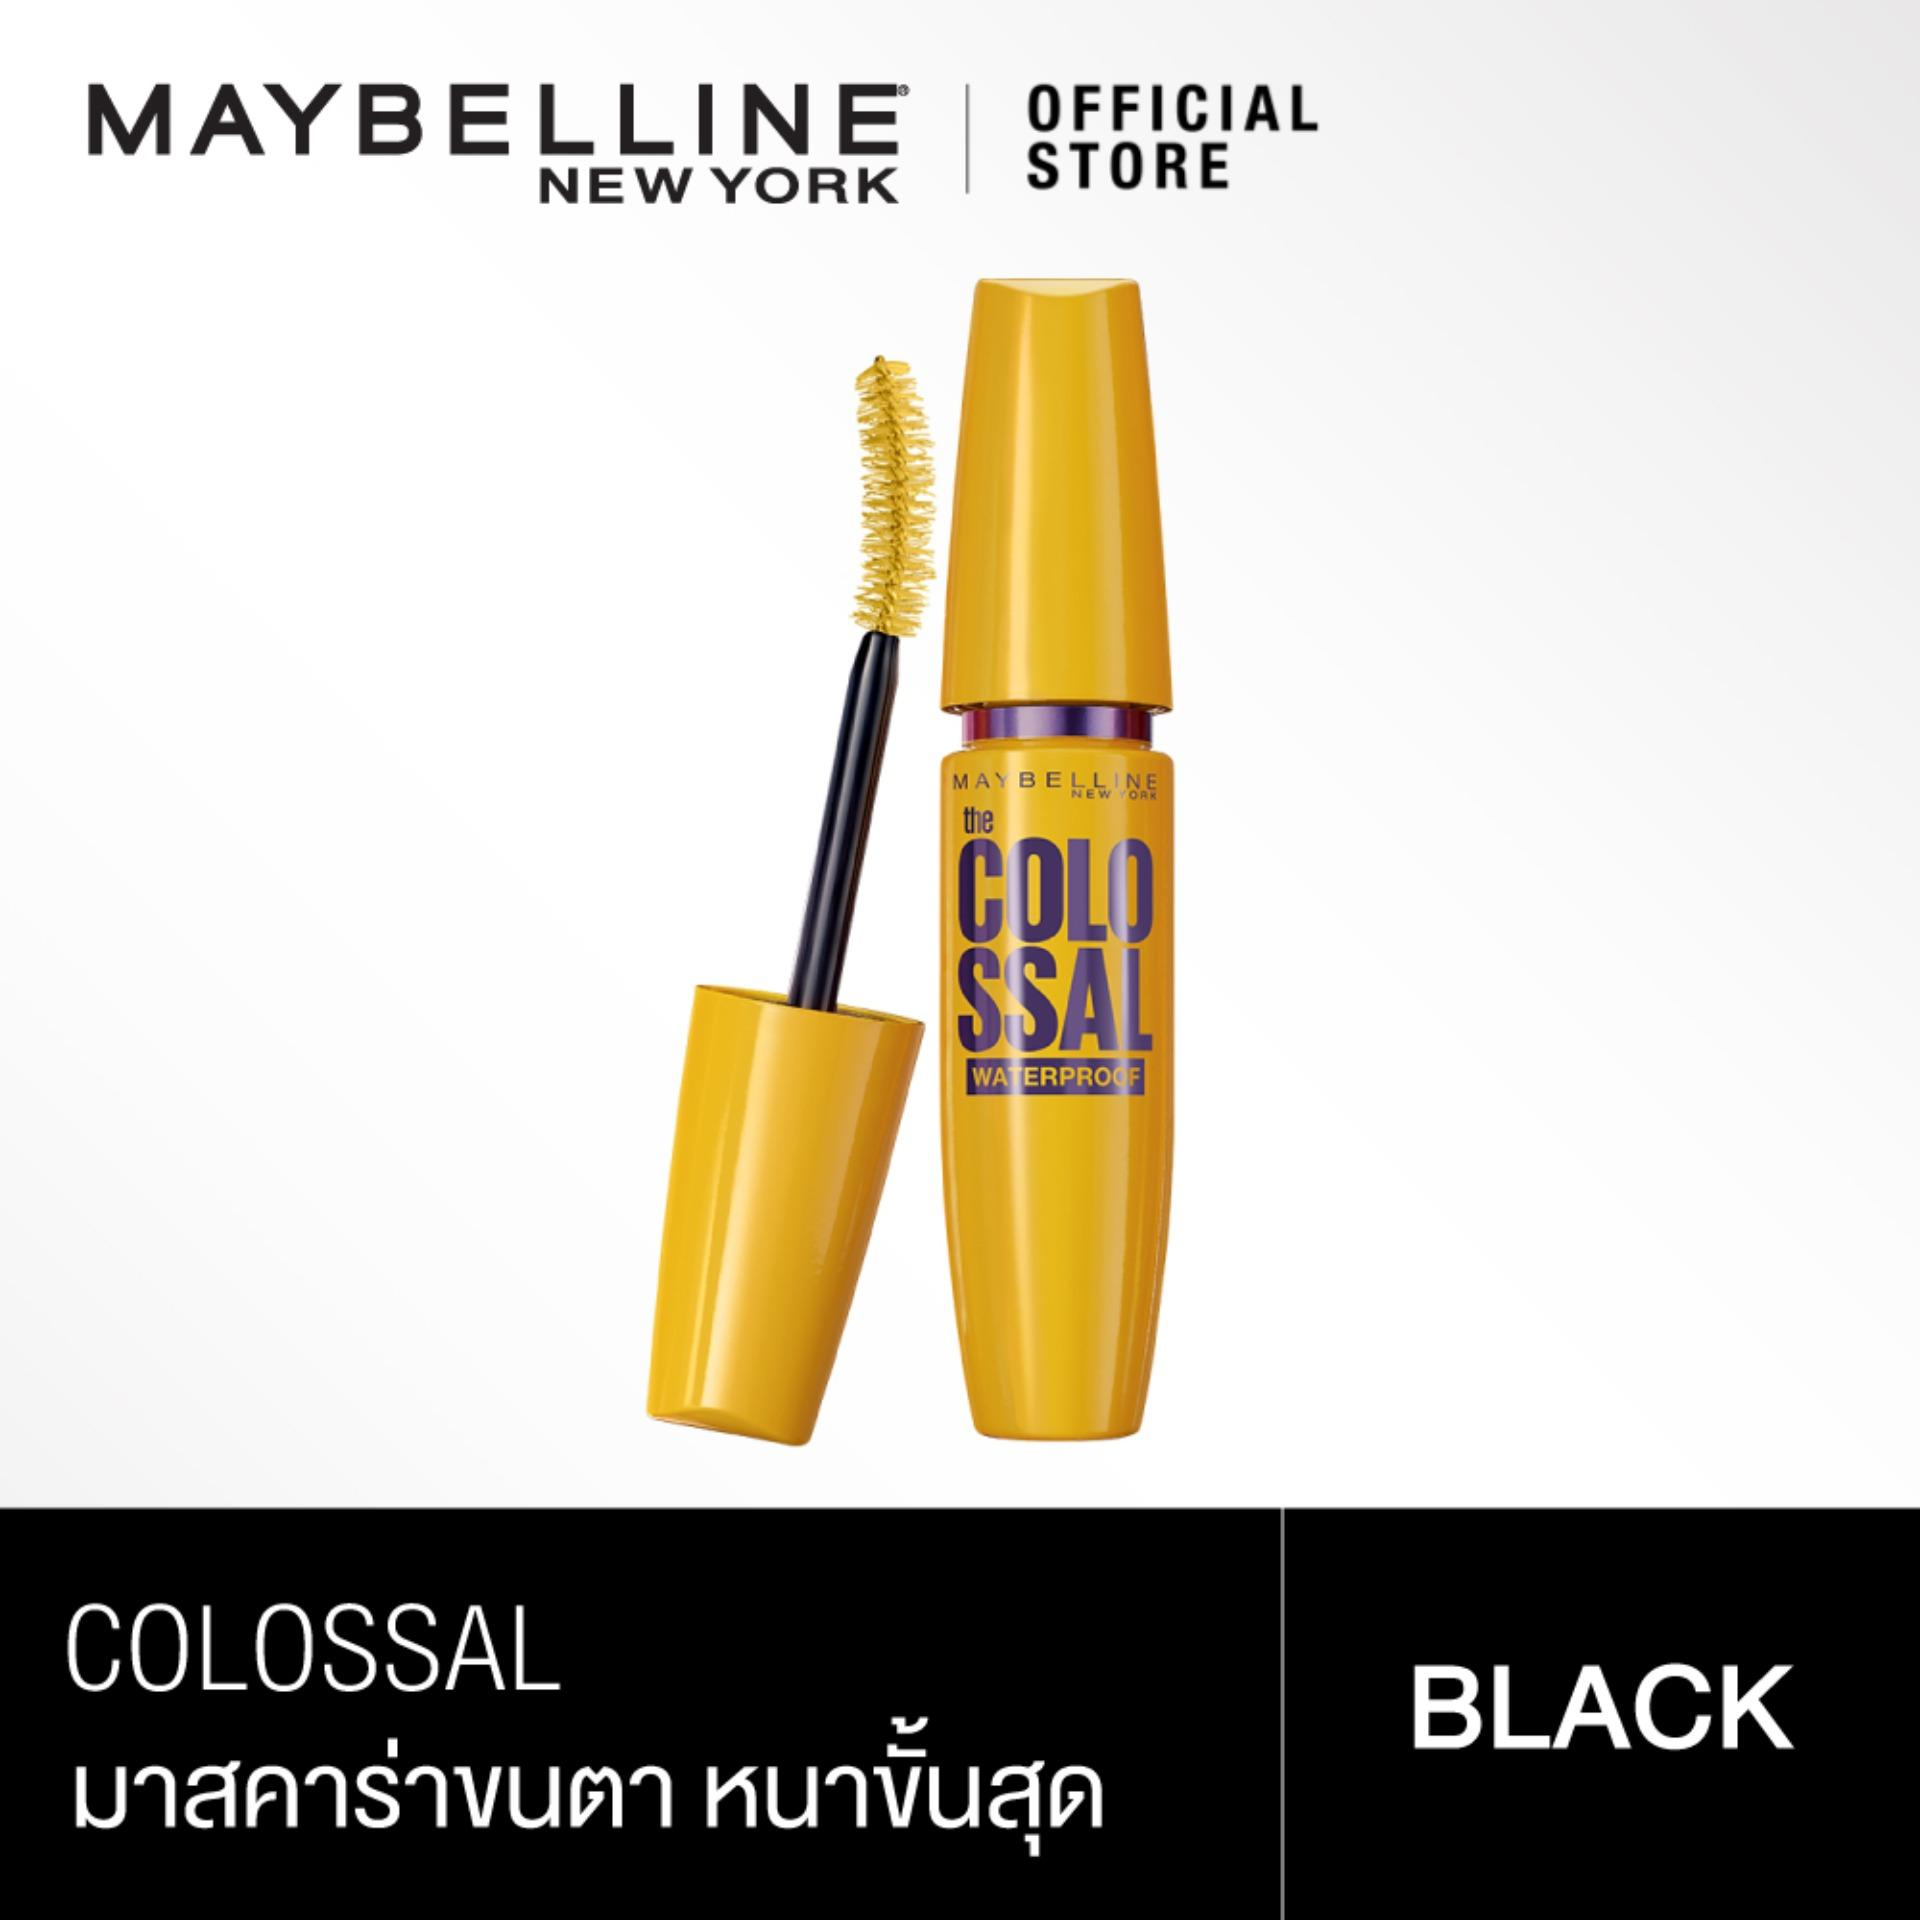 เมย์เบลลีน มาสคาร่า สูตรกันน้ำ สีดำ โคลอสซอล 9.2 มล.Maybelline Colossal Waterproof Mascara Black 9.2 ml(เครื่องสำอาง, มาสคาร่า, กันน้ำ,)